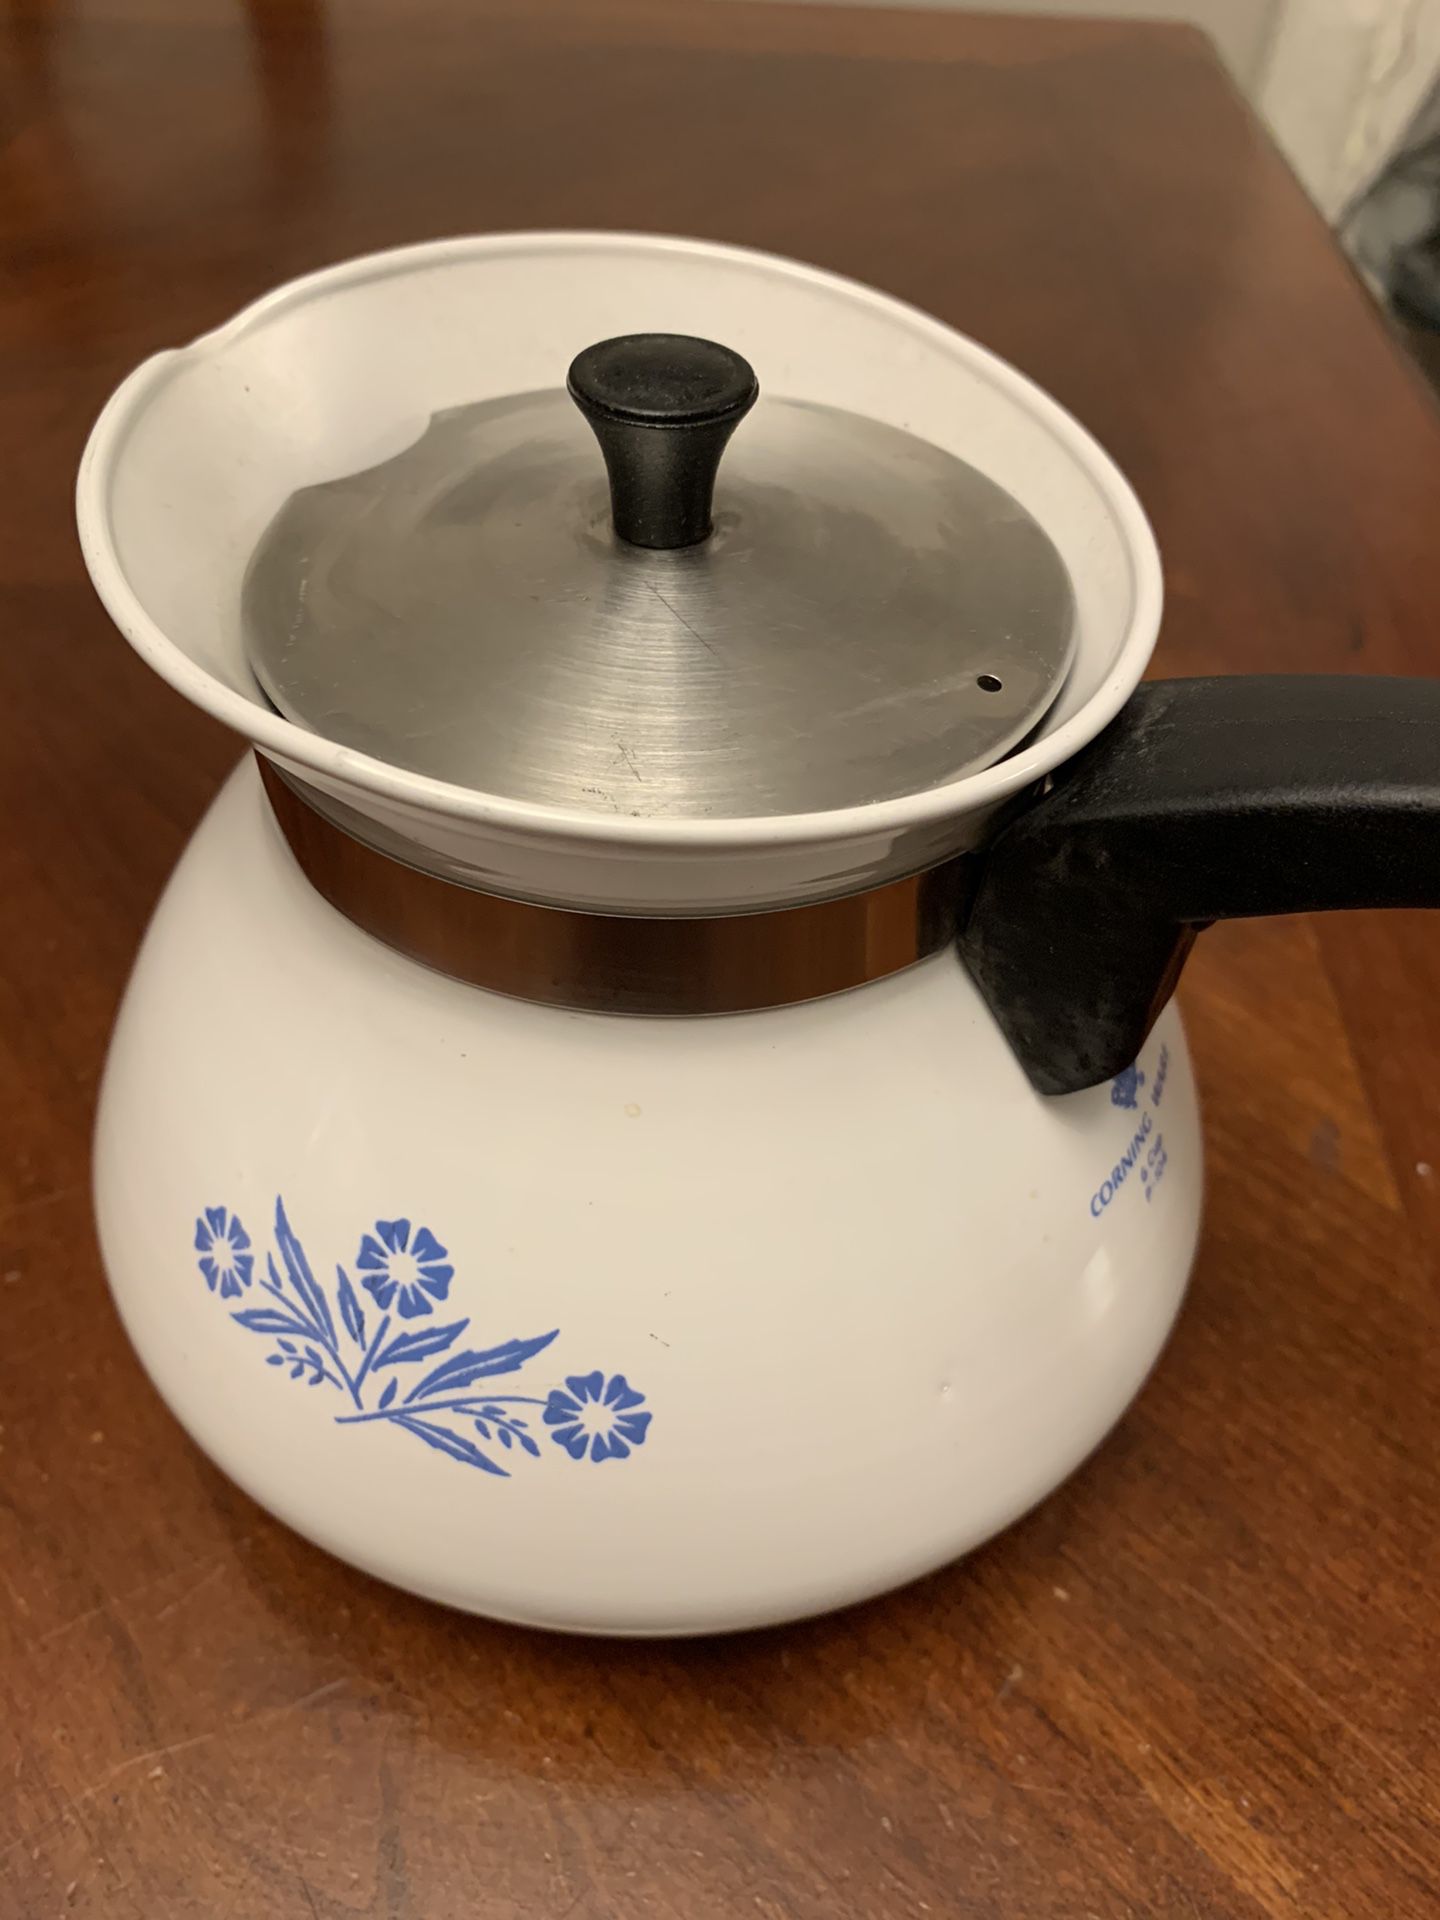 Corning ware tea/coffee pot